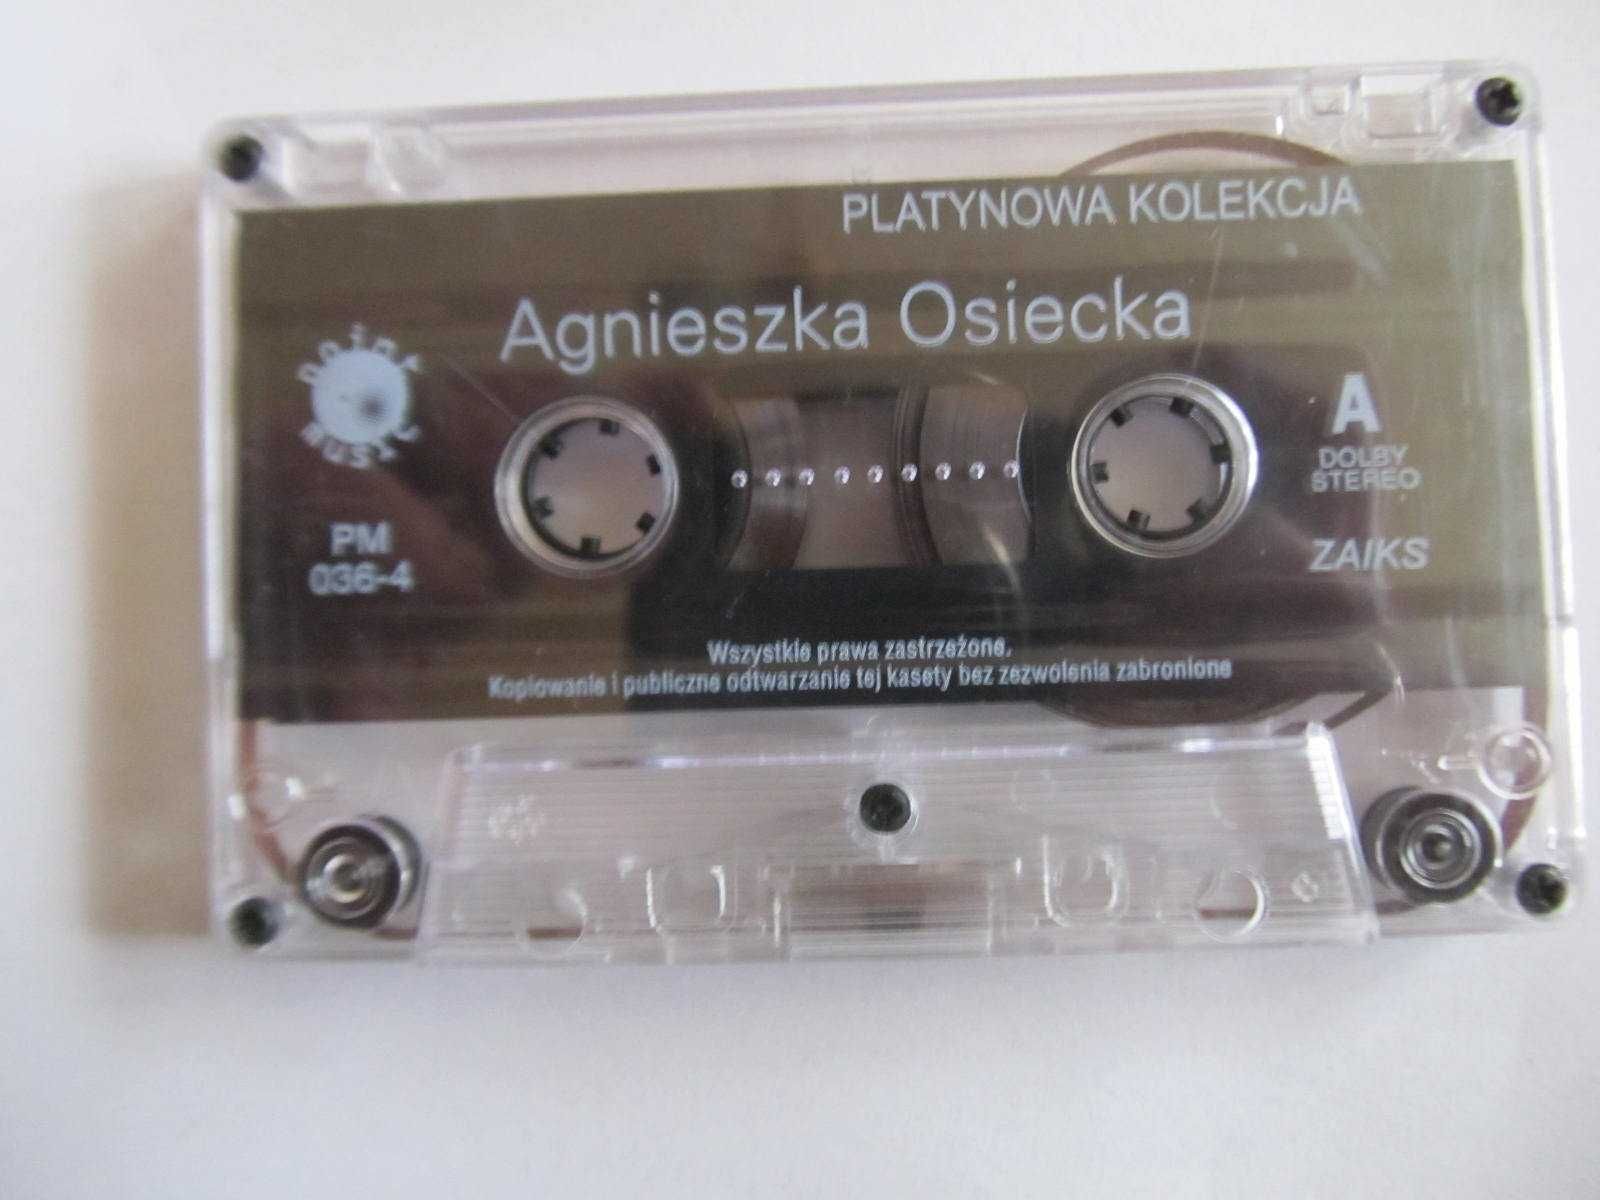 Agnieszka Osiecka "Platynowa kolekcja"- kaseta audio